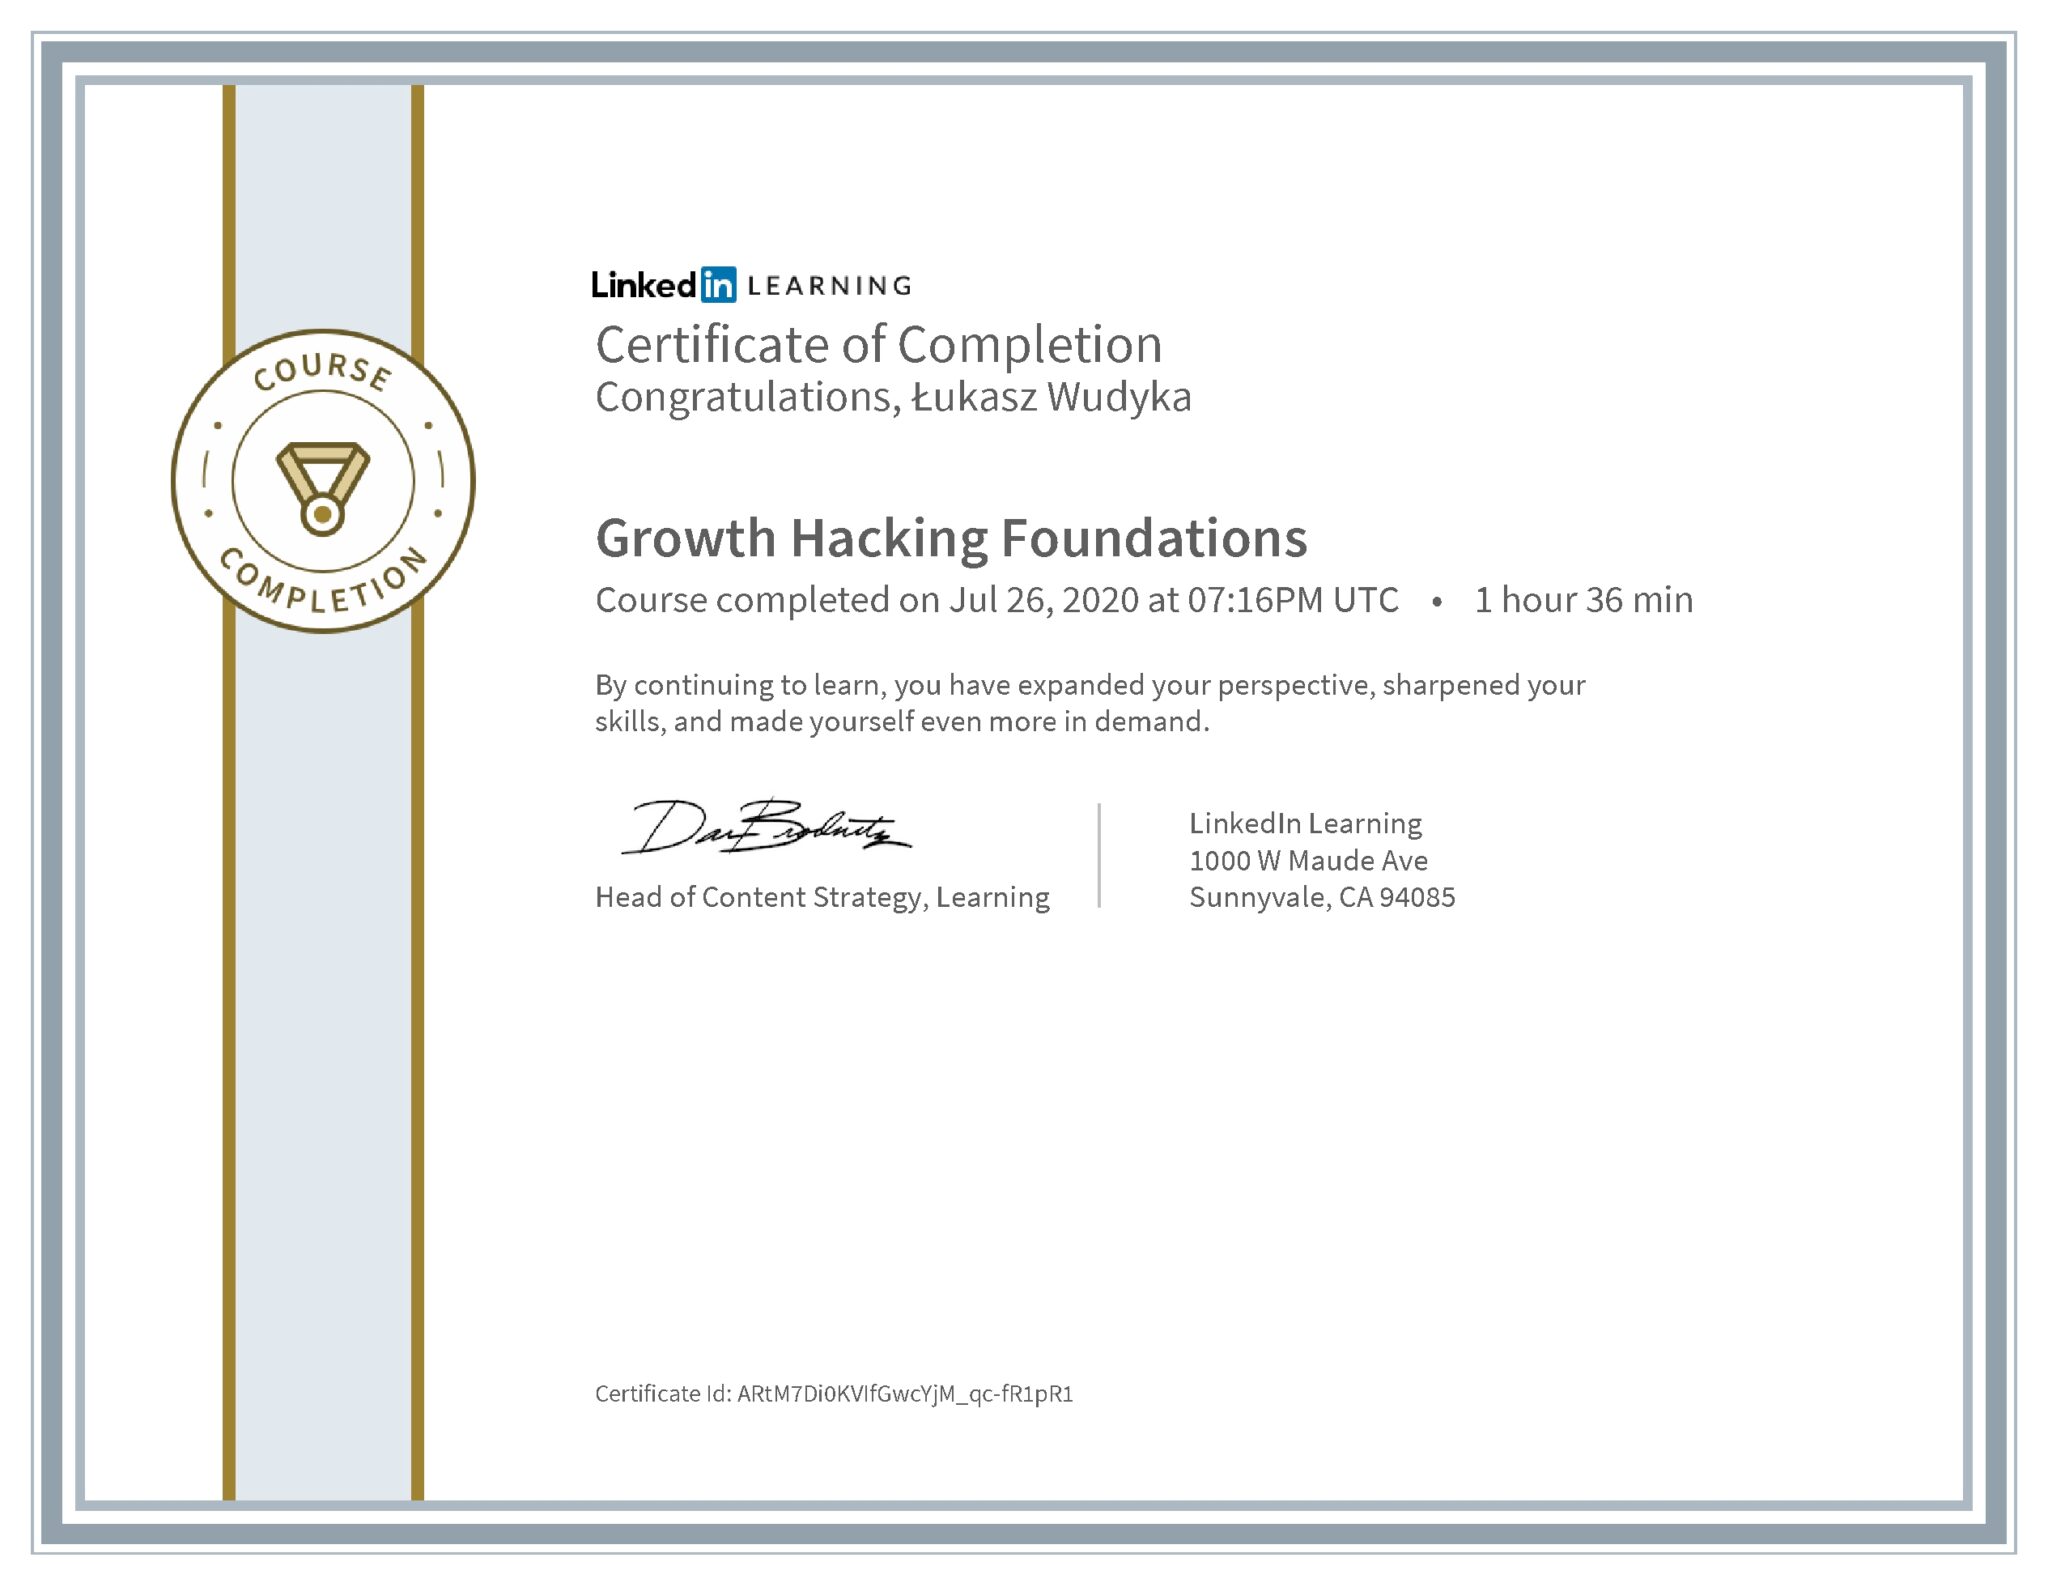 Łukasz Wudyka certyfikat LinkedIn Growth Hacking Foundations